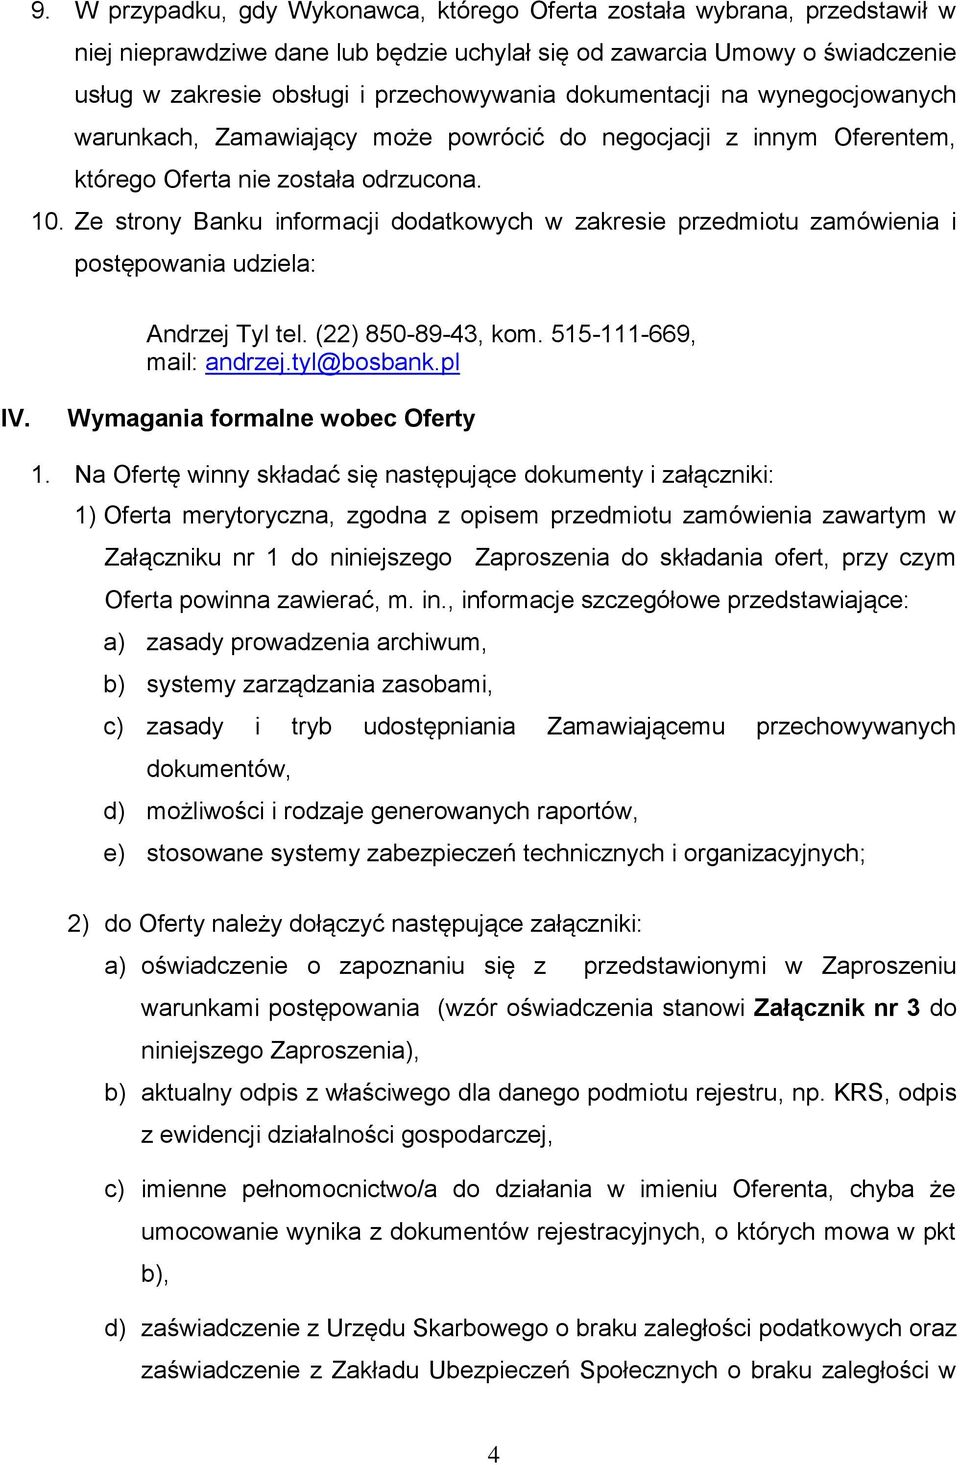 Ze strony Banku informacji dodatkowych w zakresie przedmiotu zamówienia i postępowania udziela: Andrzej Tyl tel. (22) 850-89-43, kom. 515-111-669, mail: andrzej.tyl@bosbank.pl IV.